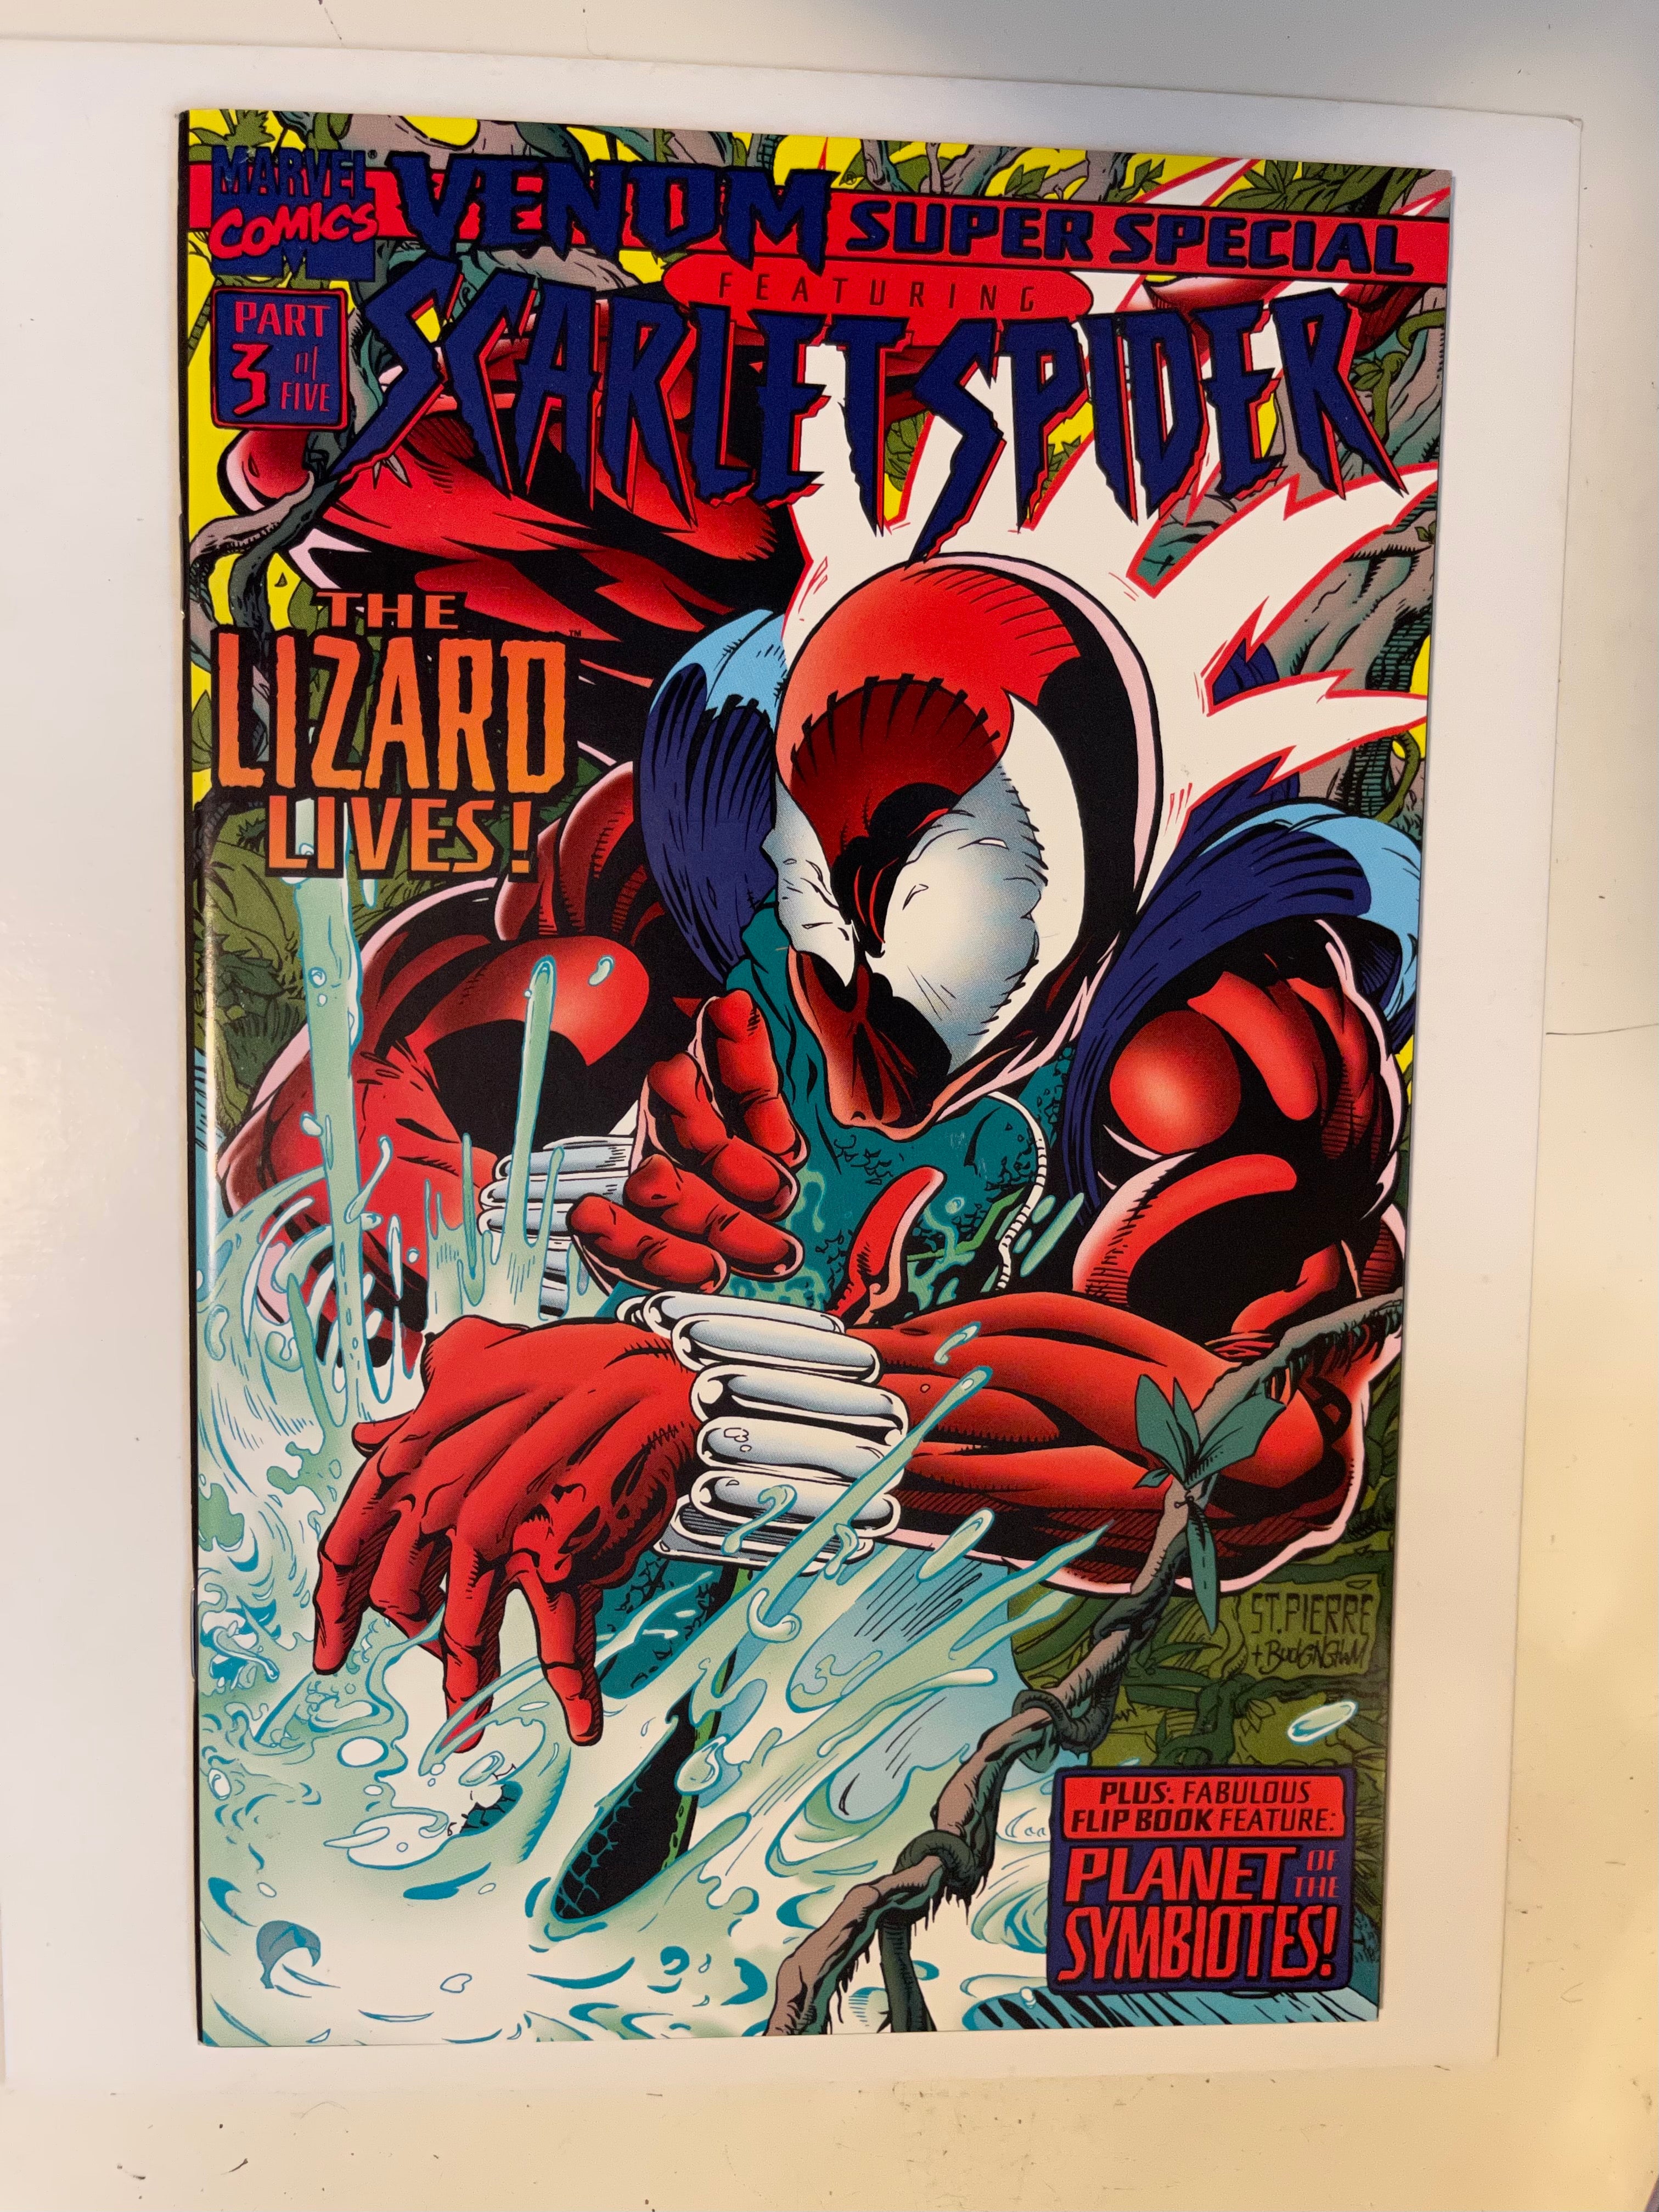 Venom Super Special #1 Vf+ high grade comic book 1995